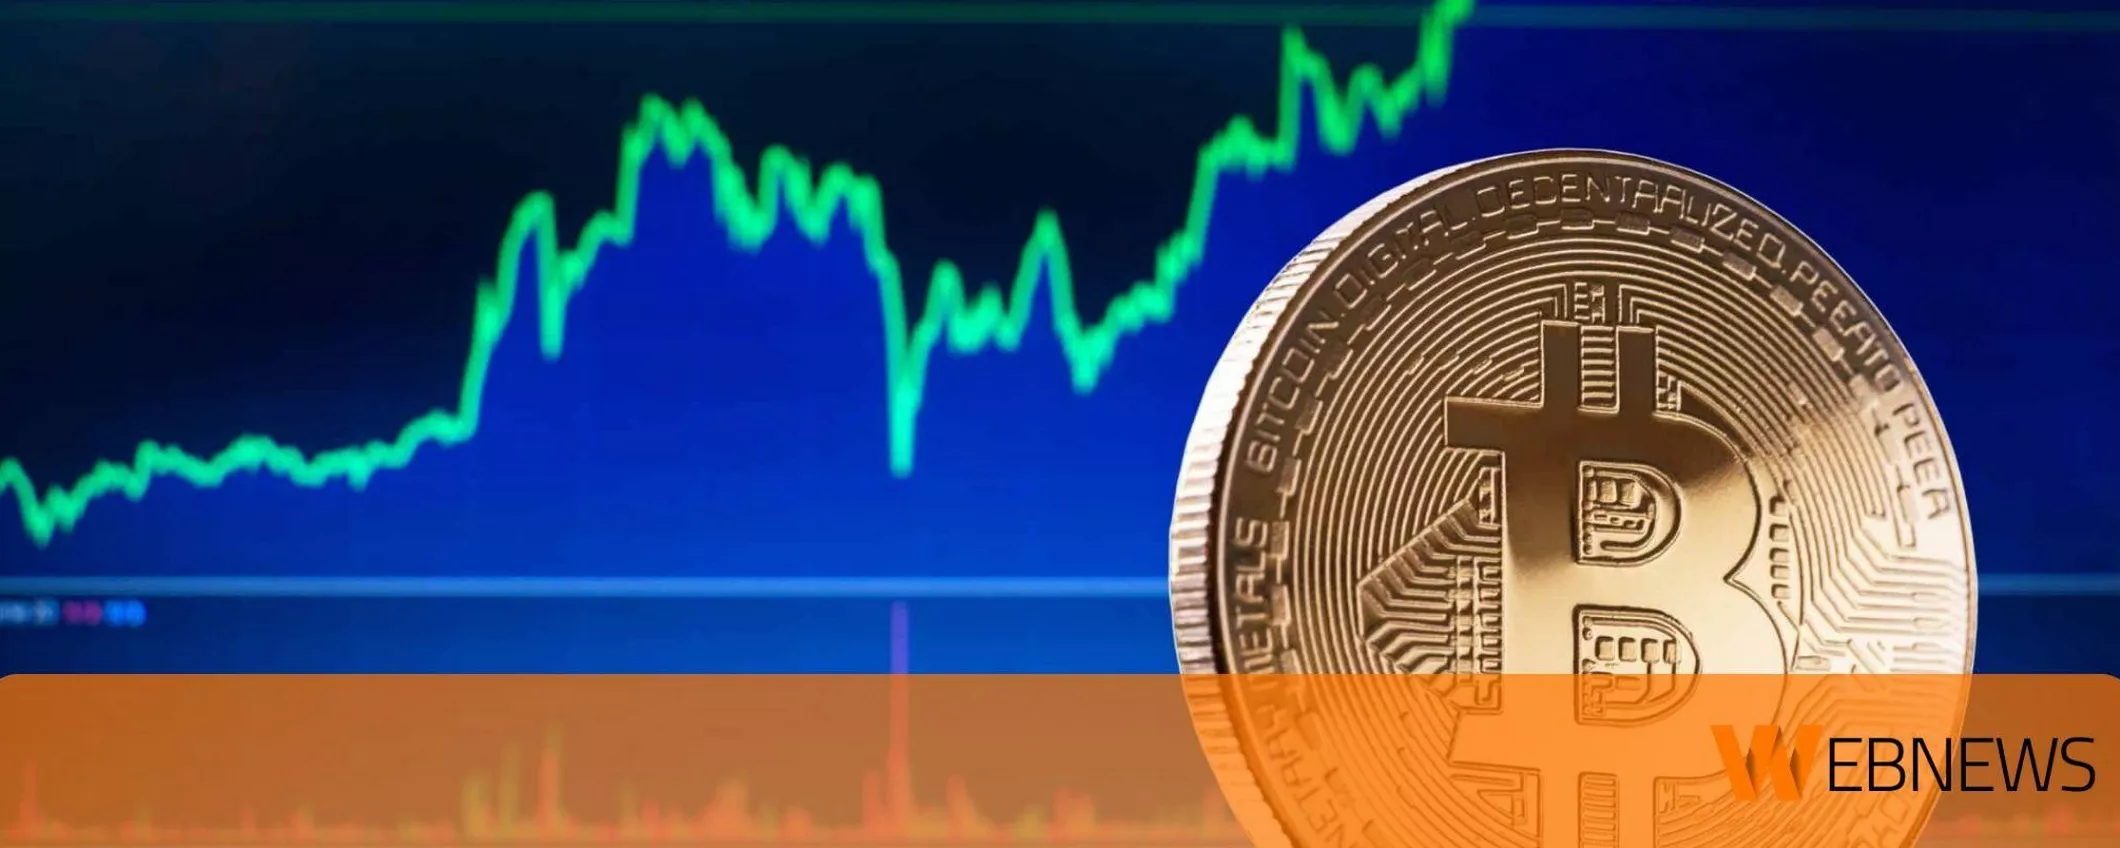 Il prezzo di Bitcoin torna a salire mentre la prevendita di 99Bitcoins token si avvicina al traguardo di $ 2 milioni